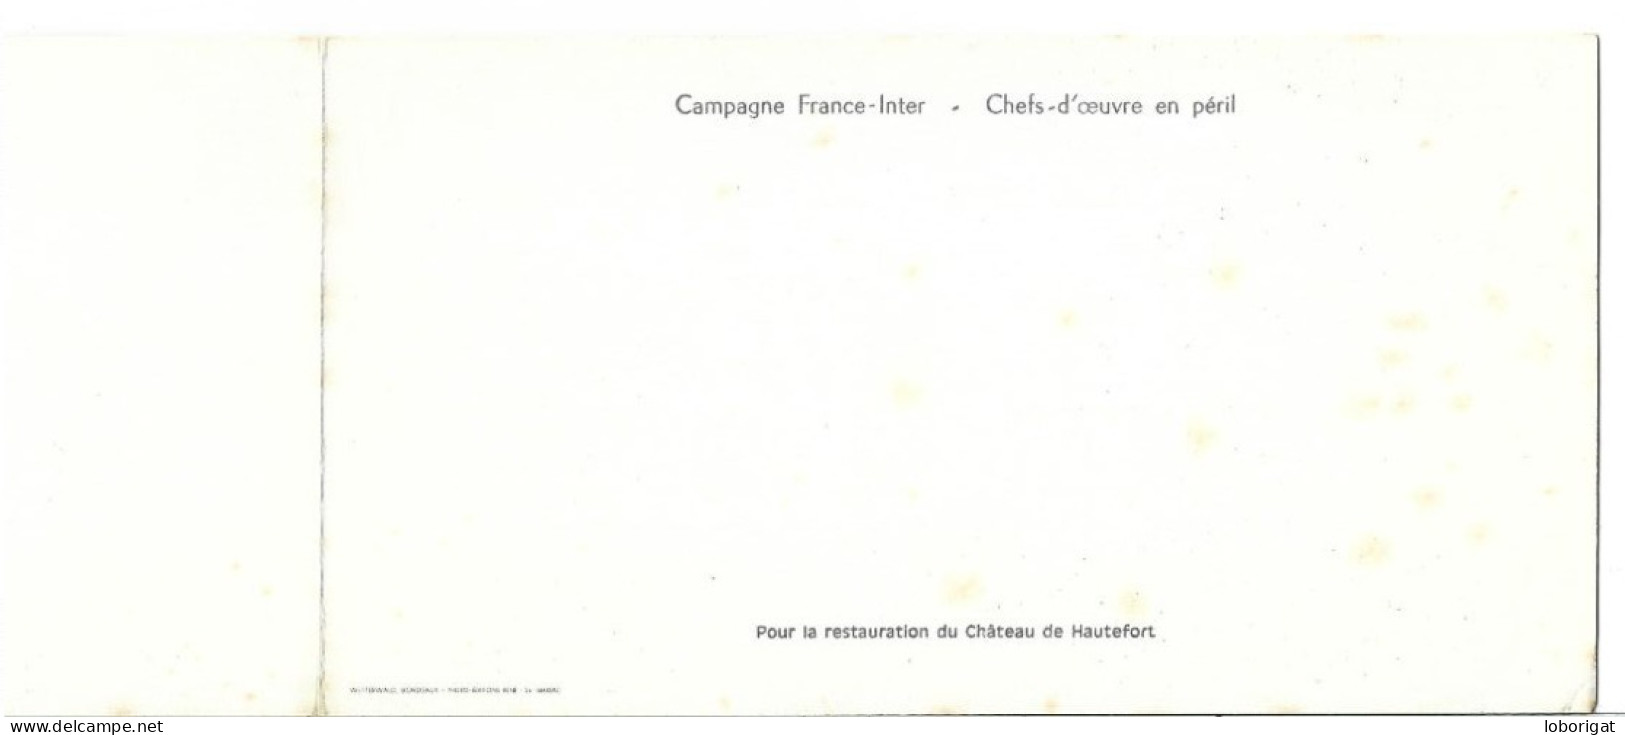 CAMPAGNE FRANCE - INTER - CHEFS-D'OEUVRE EN PERIL.- POUR LA RESTAURATION DU CHATEAU DE HAUTEFORT.-  FRANCIA ) - Hautefort